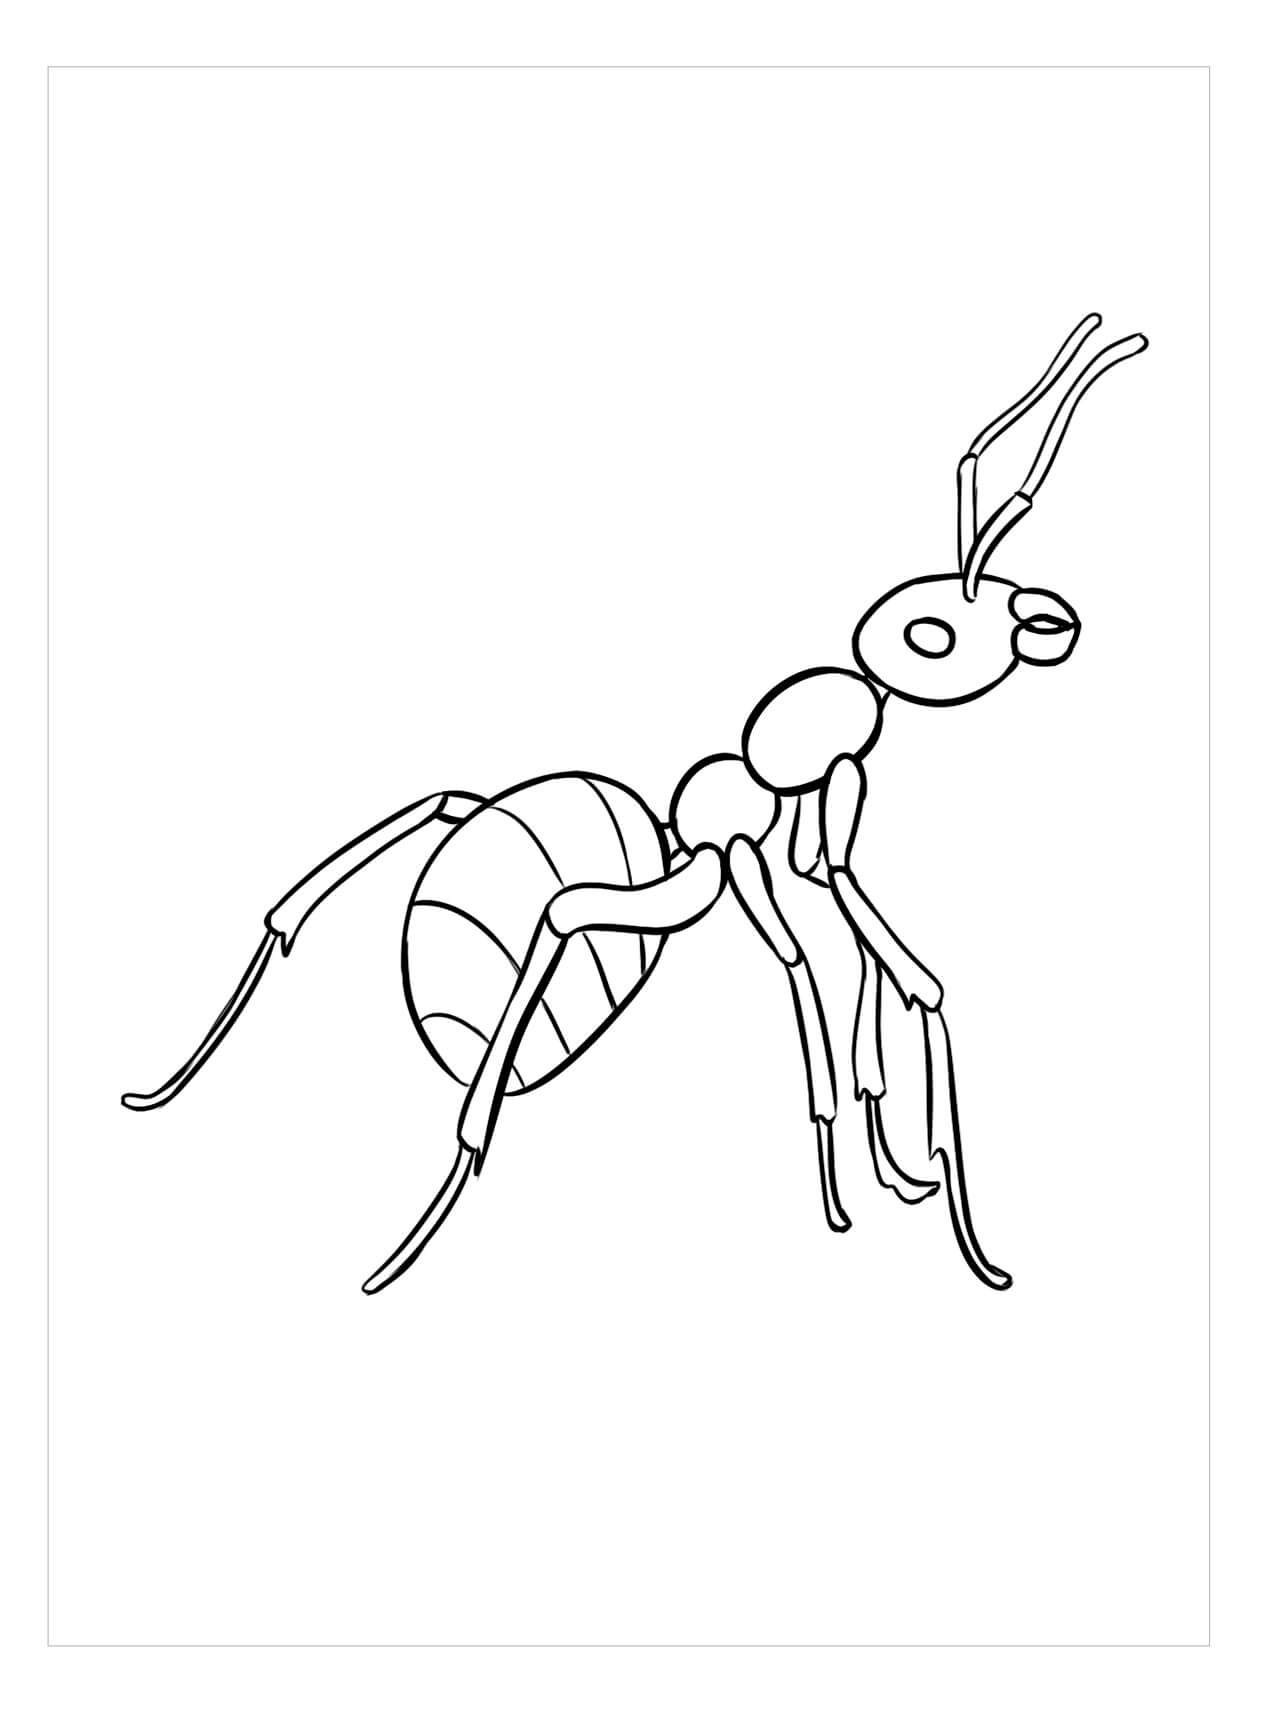 Dibujos de Imágenes gratis de Hormigas para colorear